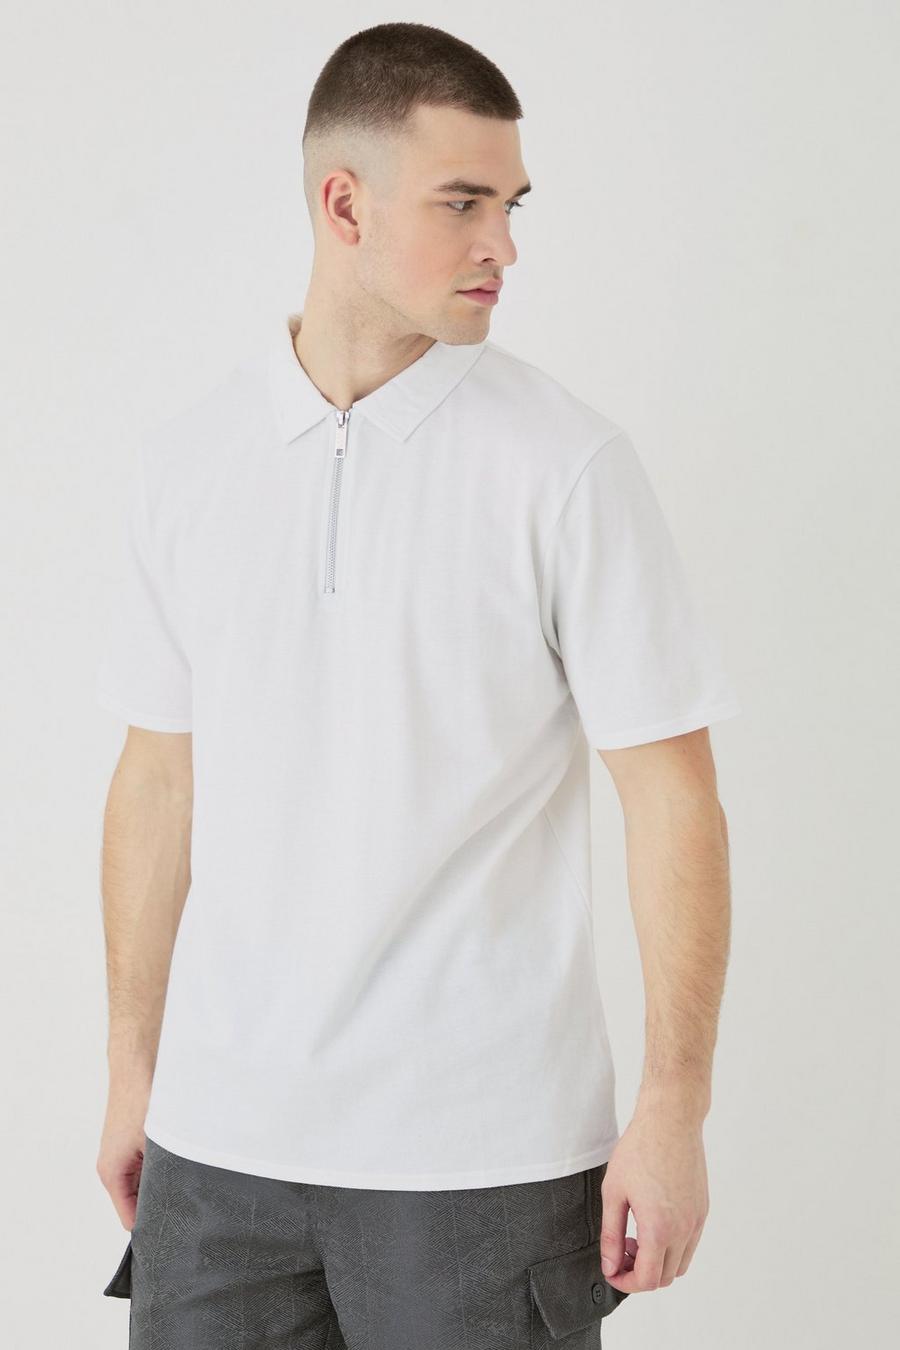 White vilebrequin white polo shirt